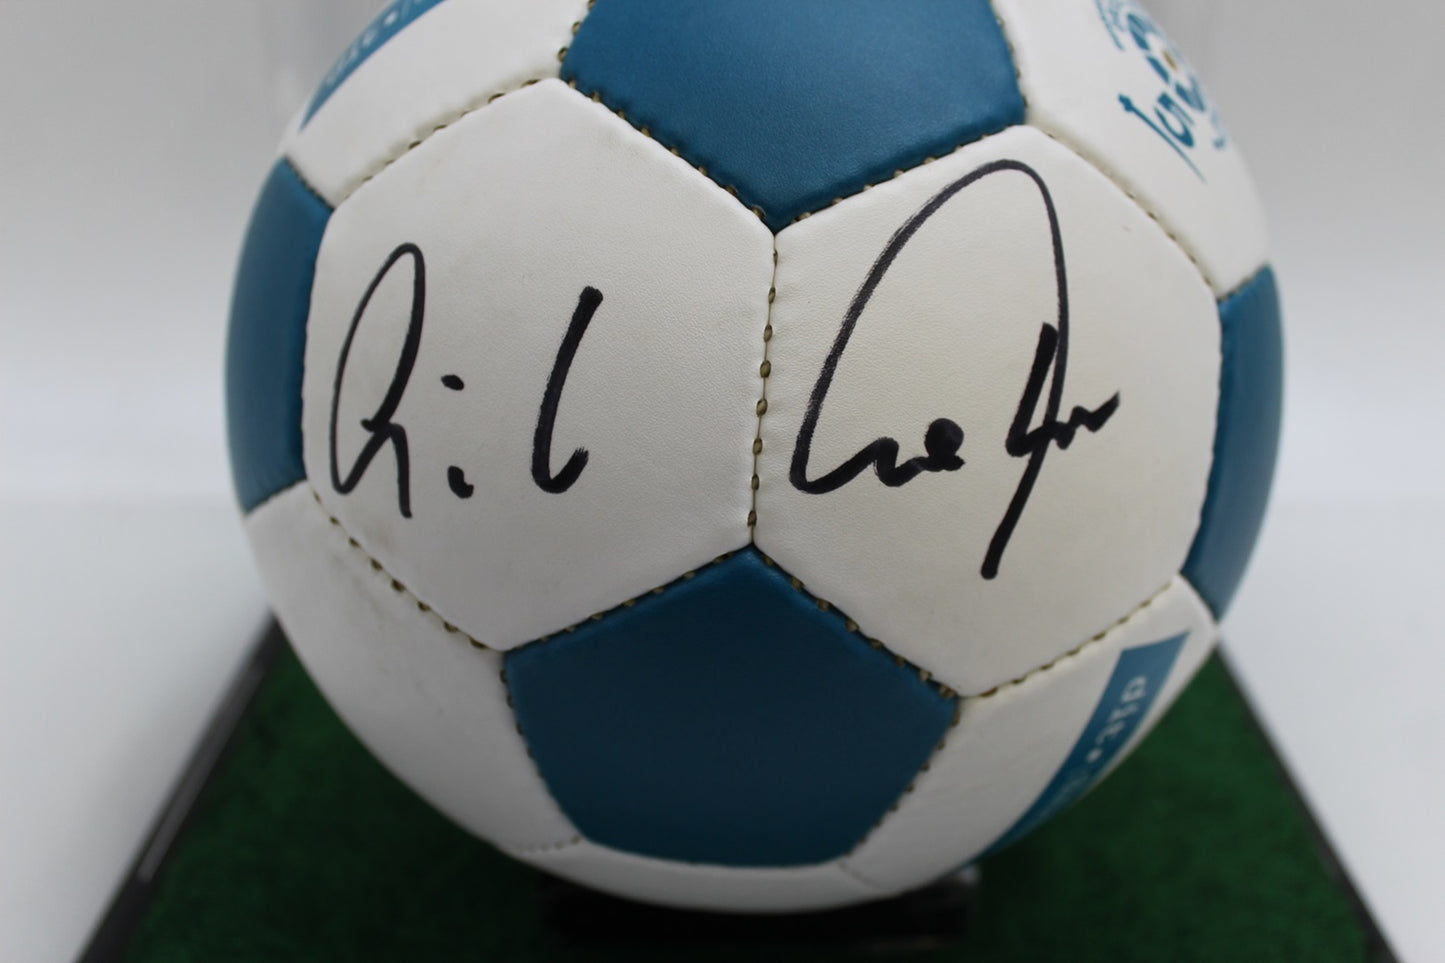 Fußball Günter Netzer signiert Borussia Mönchengladbach Neu Autogramm